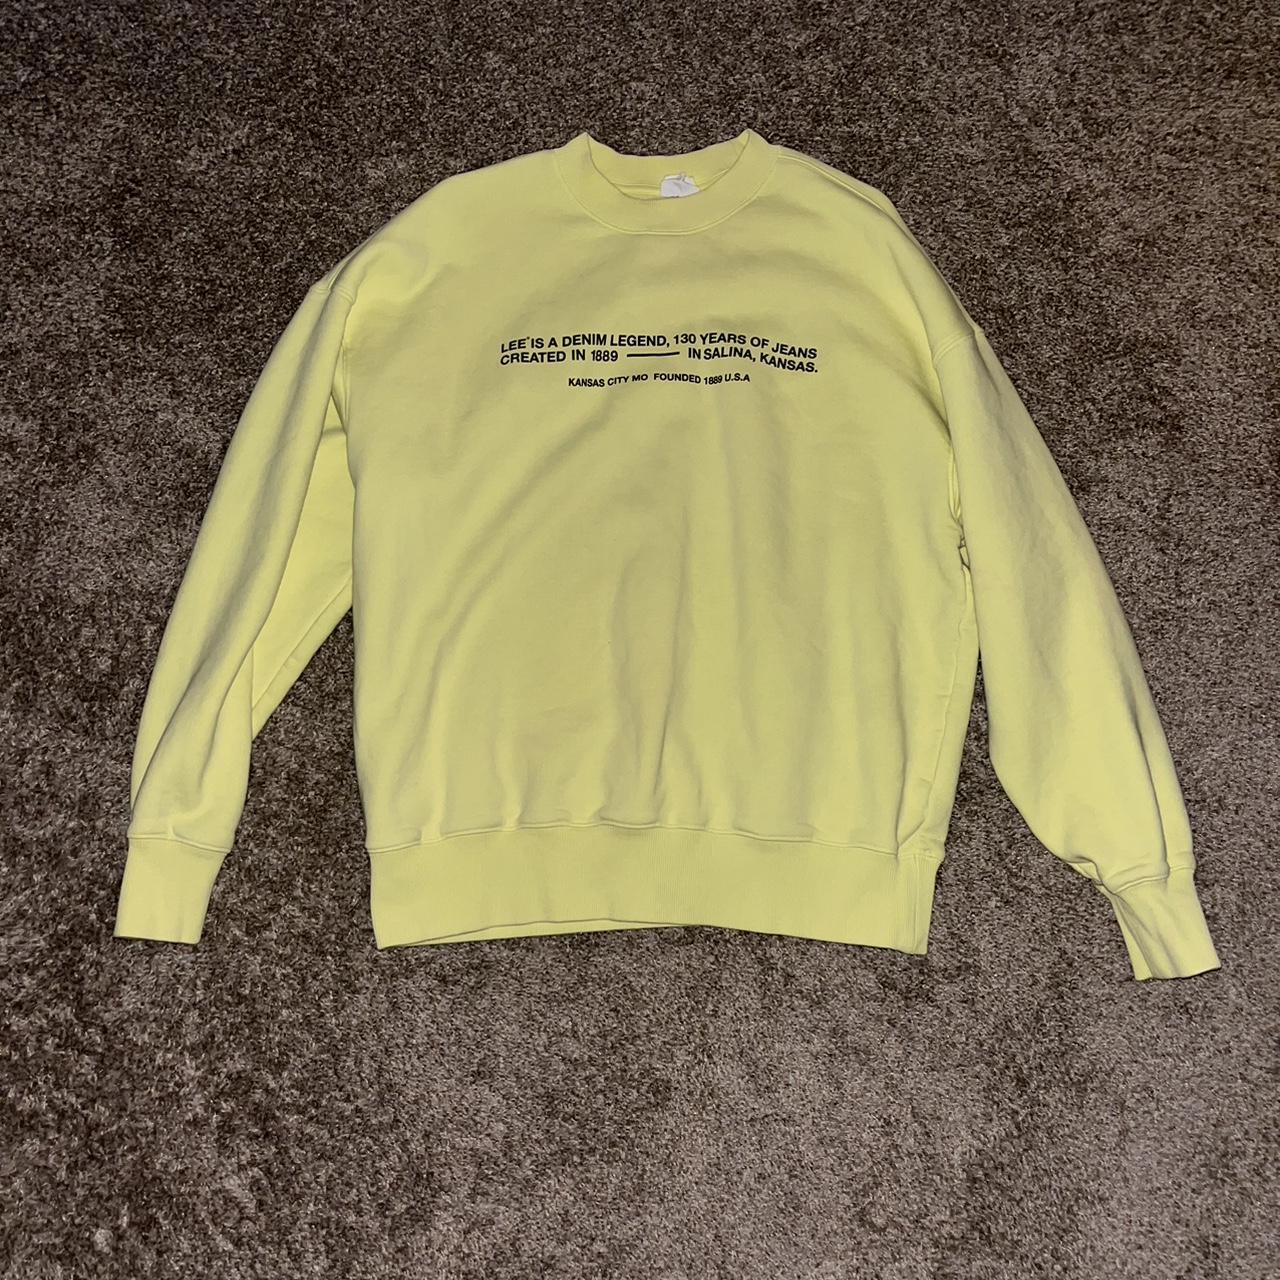 Lee H&M Neon Yellow Men's Medium Sweatshirt Has... - Depop